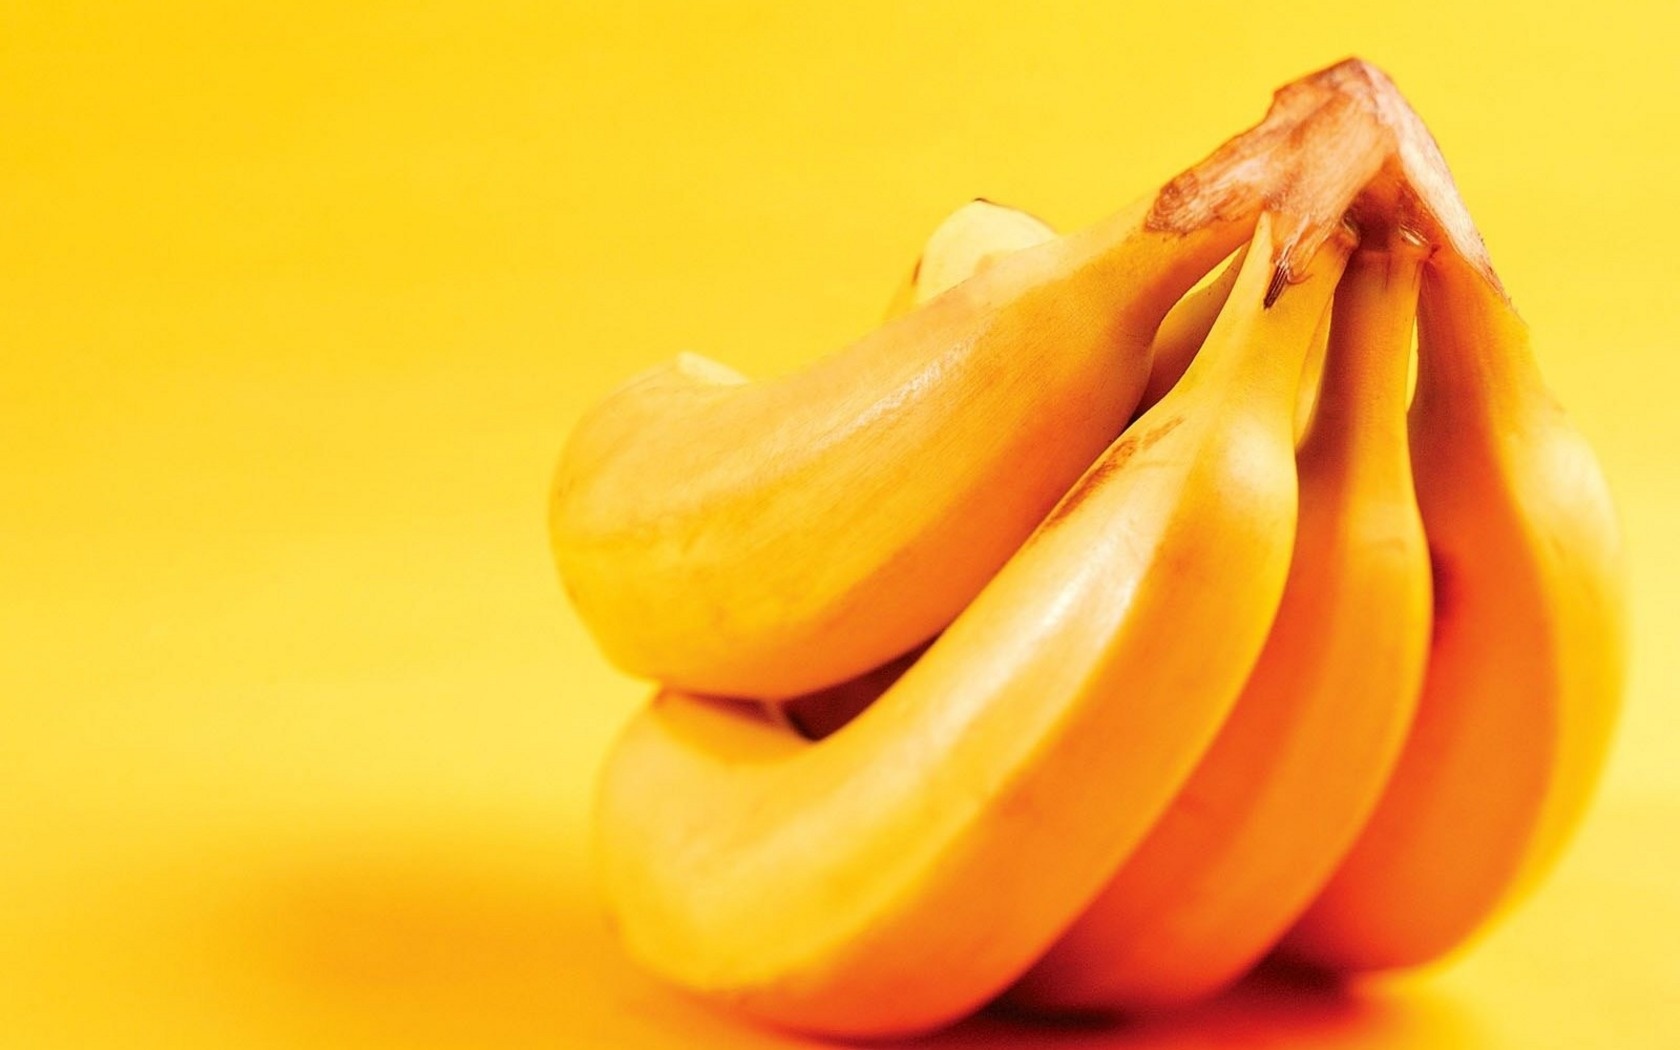 фрукты, бананы, скачать фото, banana wallpaper, обои на рабочий стол